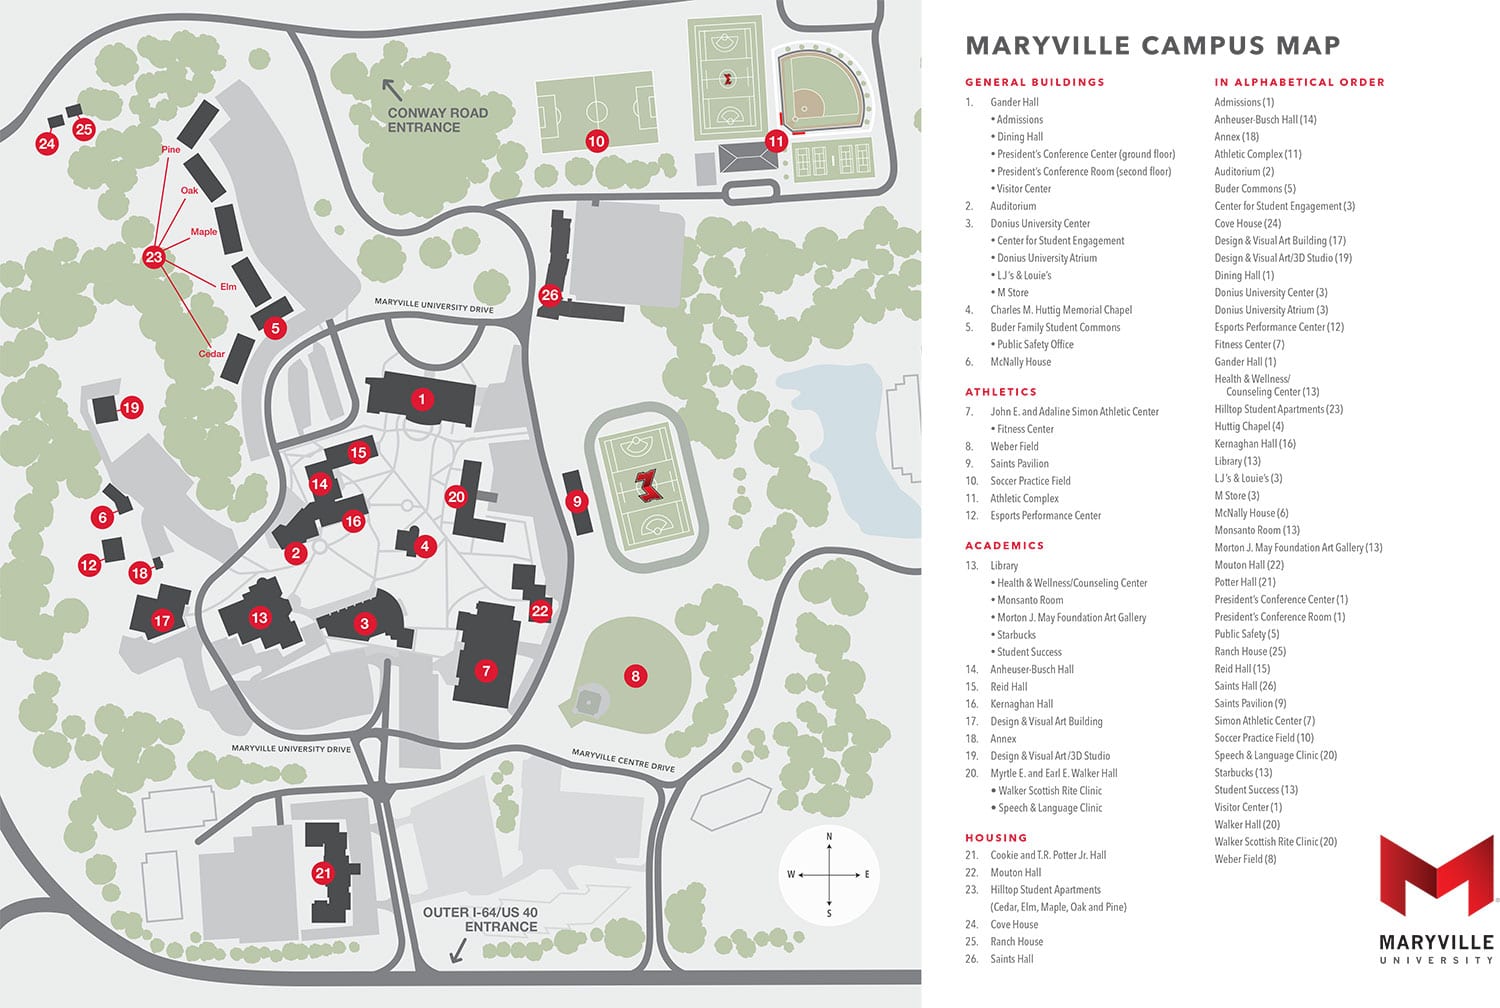 UPLB Campus Map